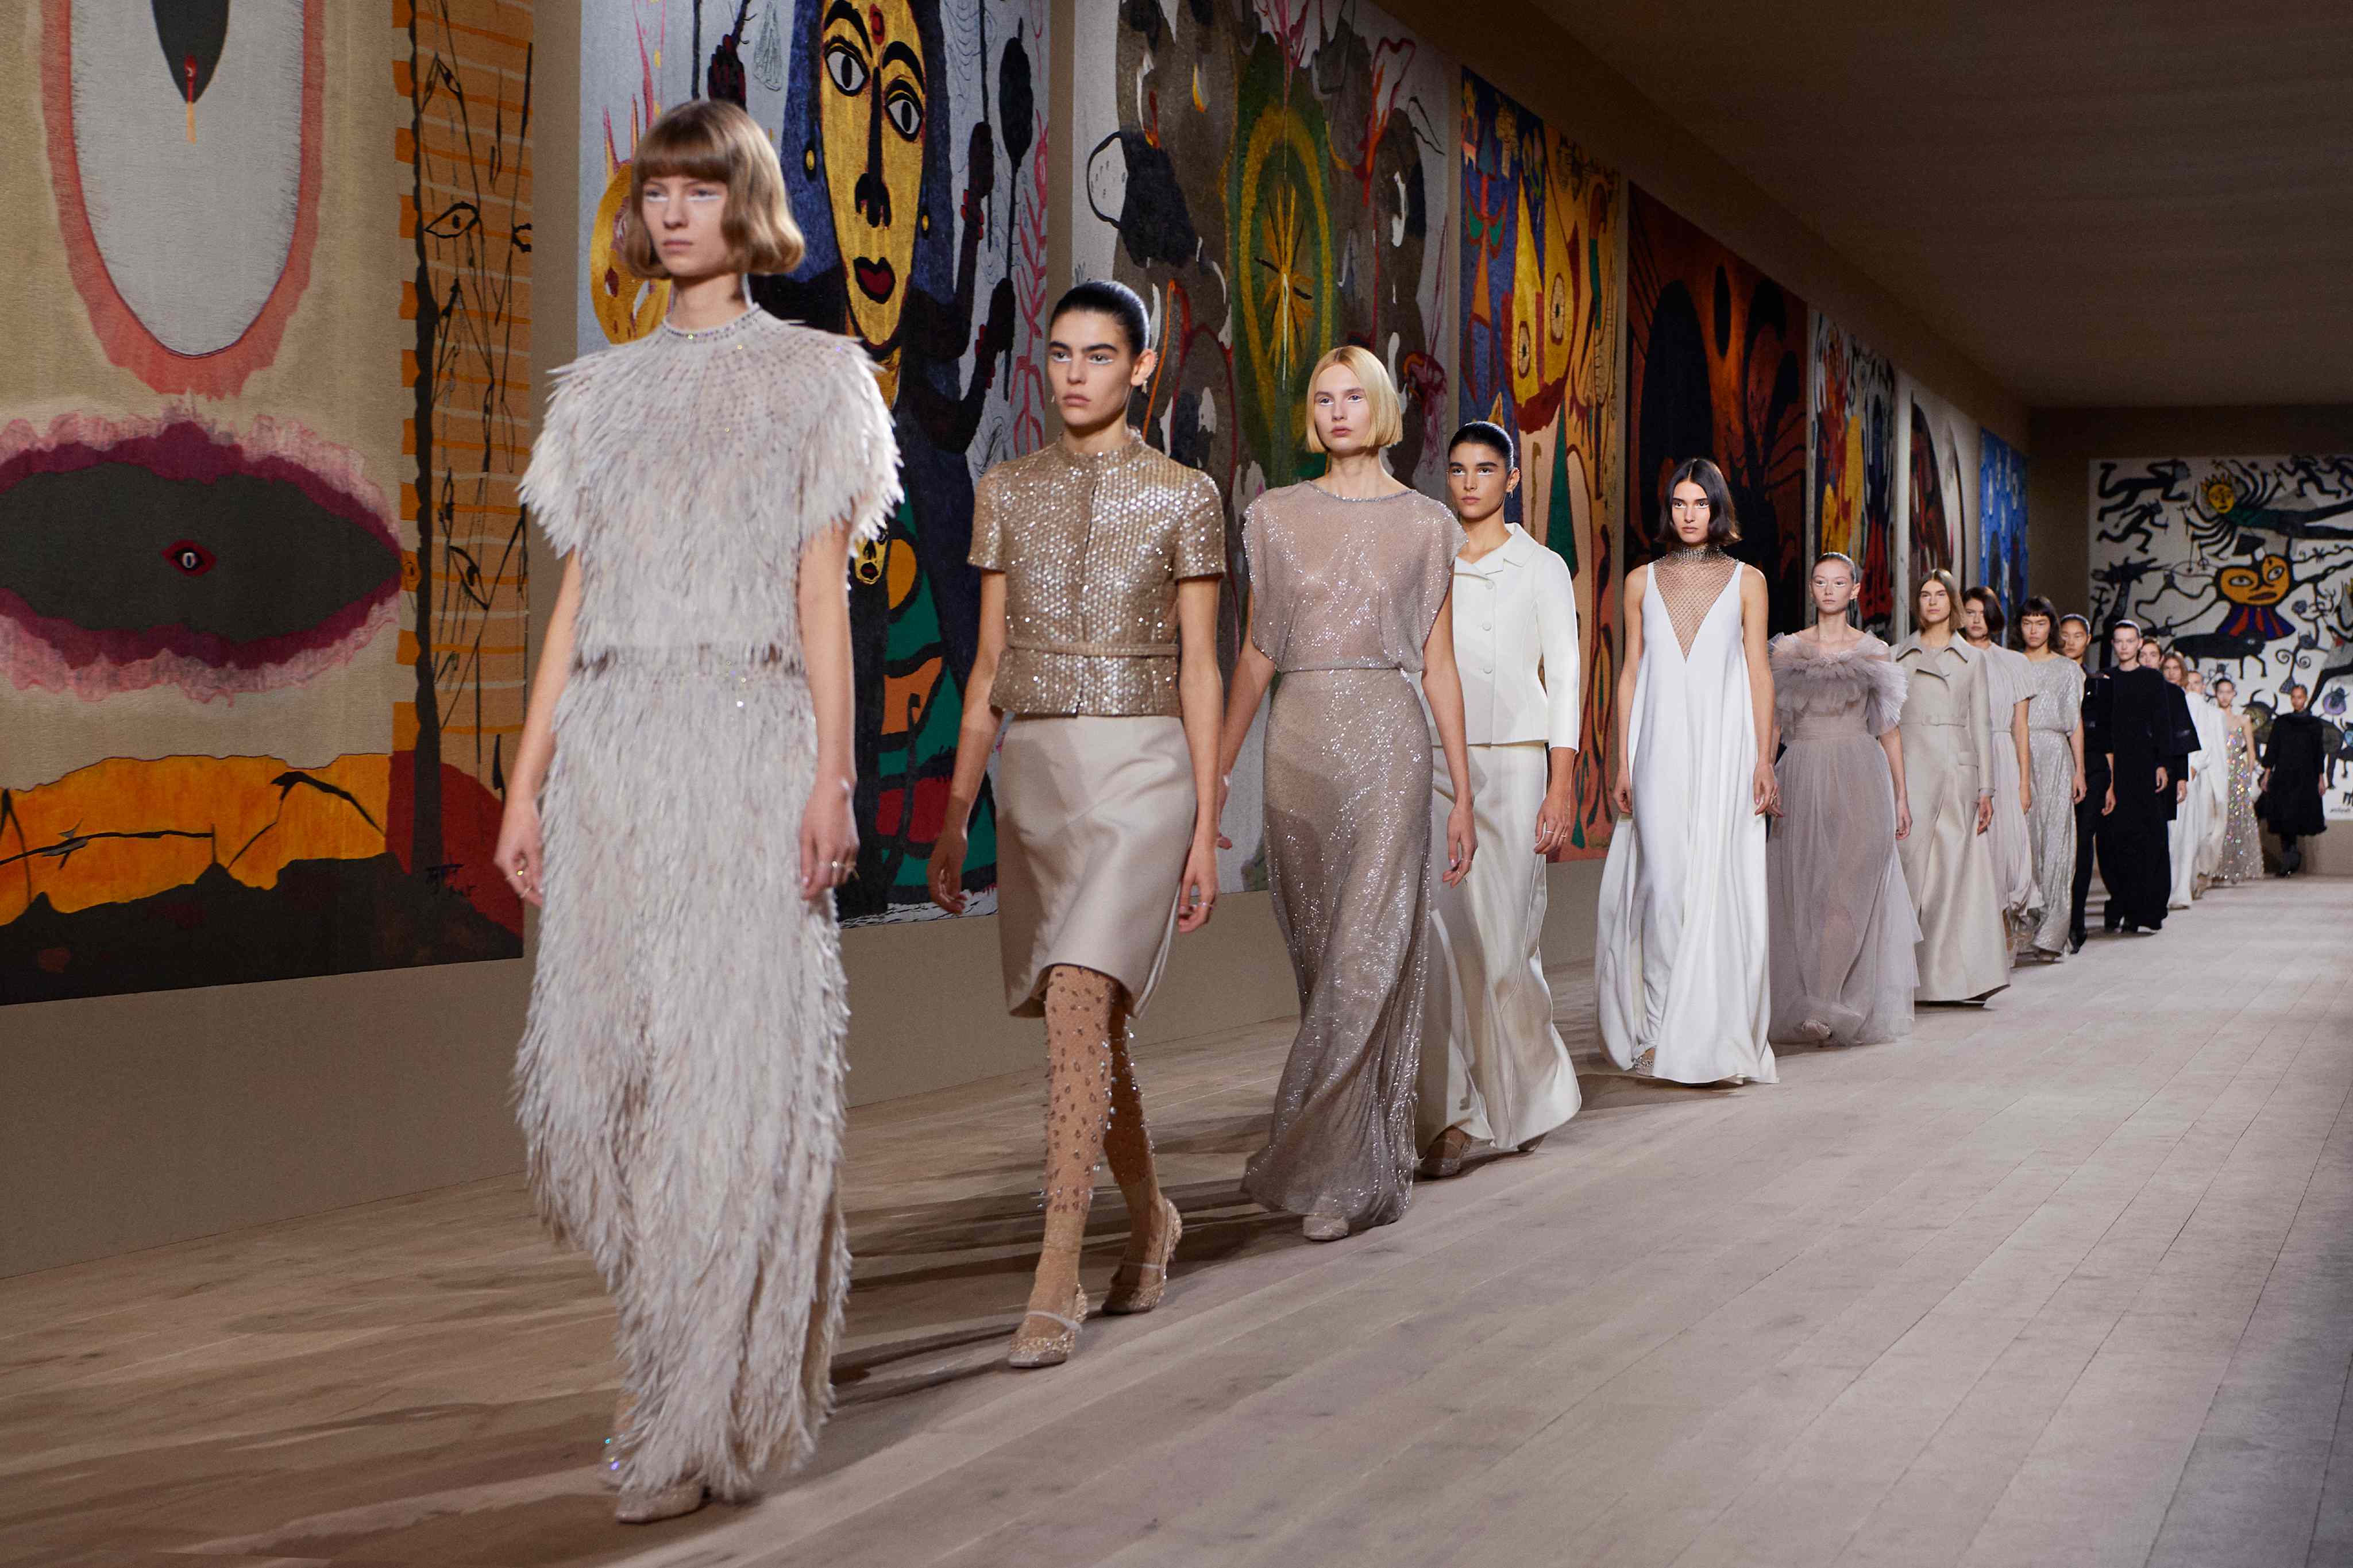 Dior channels rebellious women at Paris Fashion Week  AP News